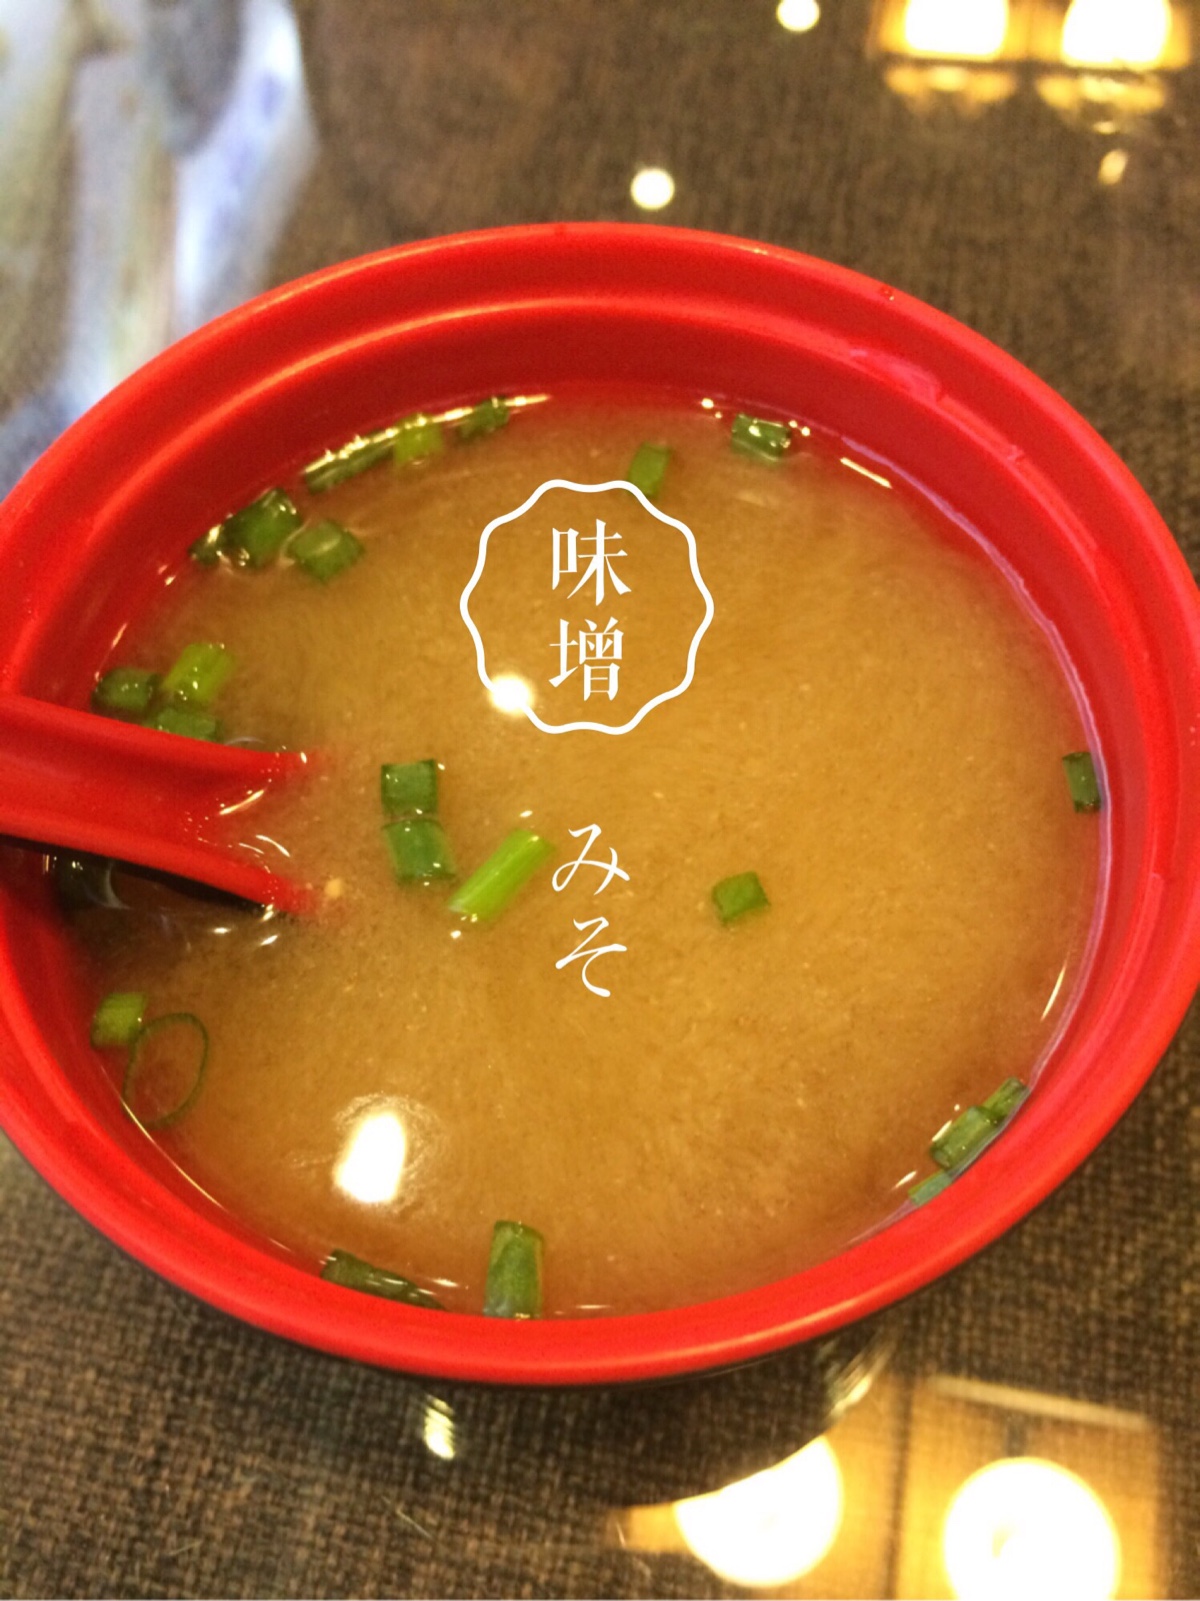 日式餐具图片大全-日式餐具高清图片下载-觅知网